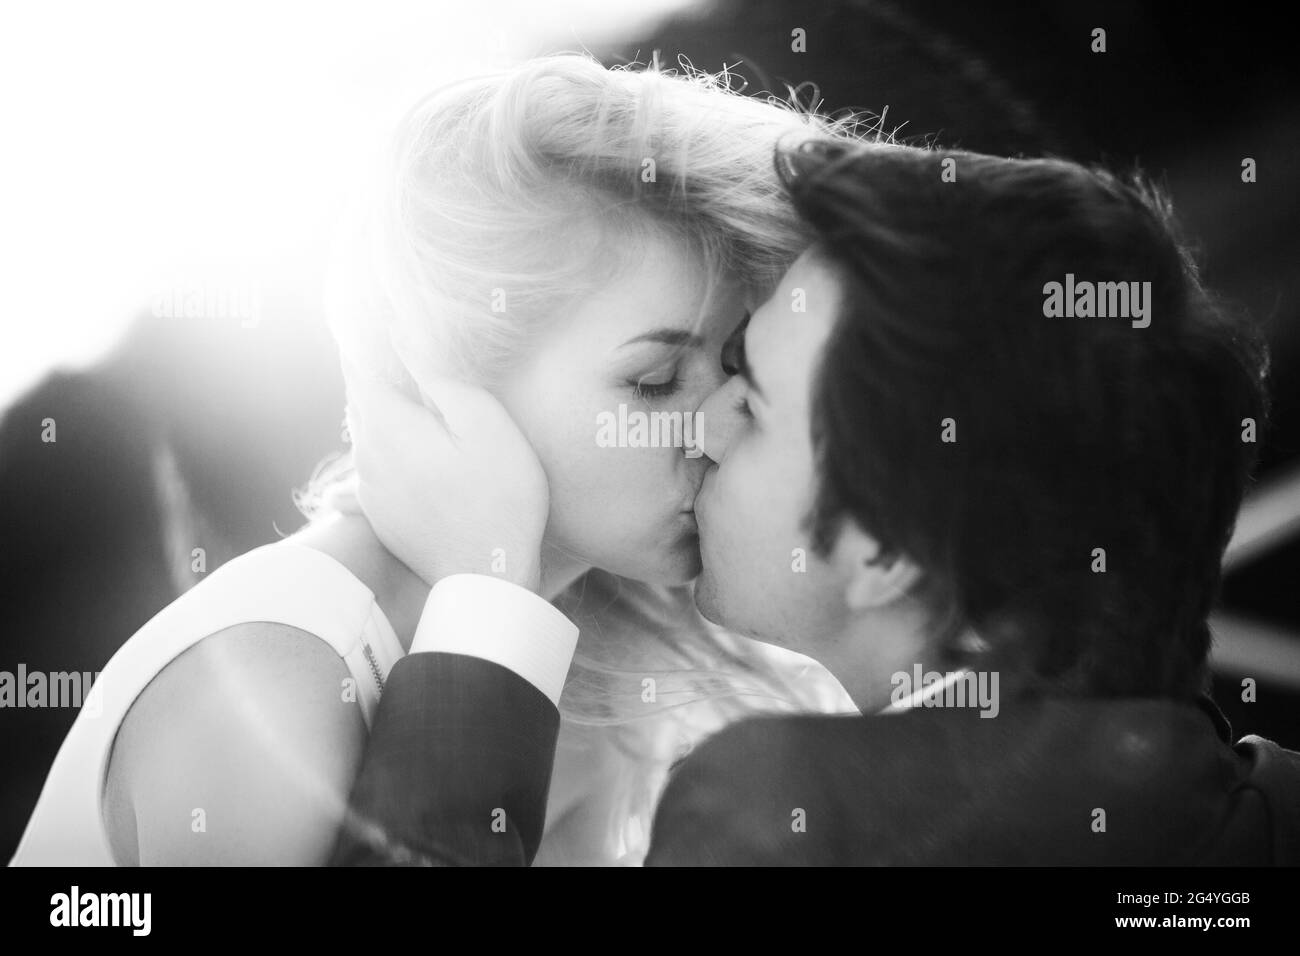 Mariage couple mariée et marié ensemble embrassant l'image noir et blanc. Banque D'Images